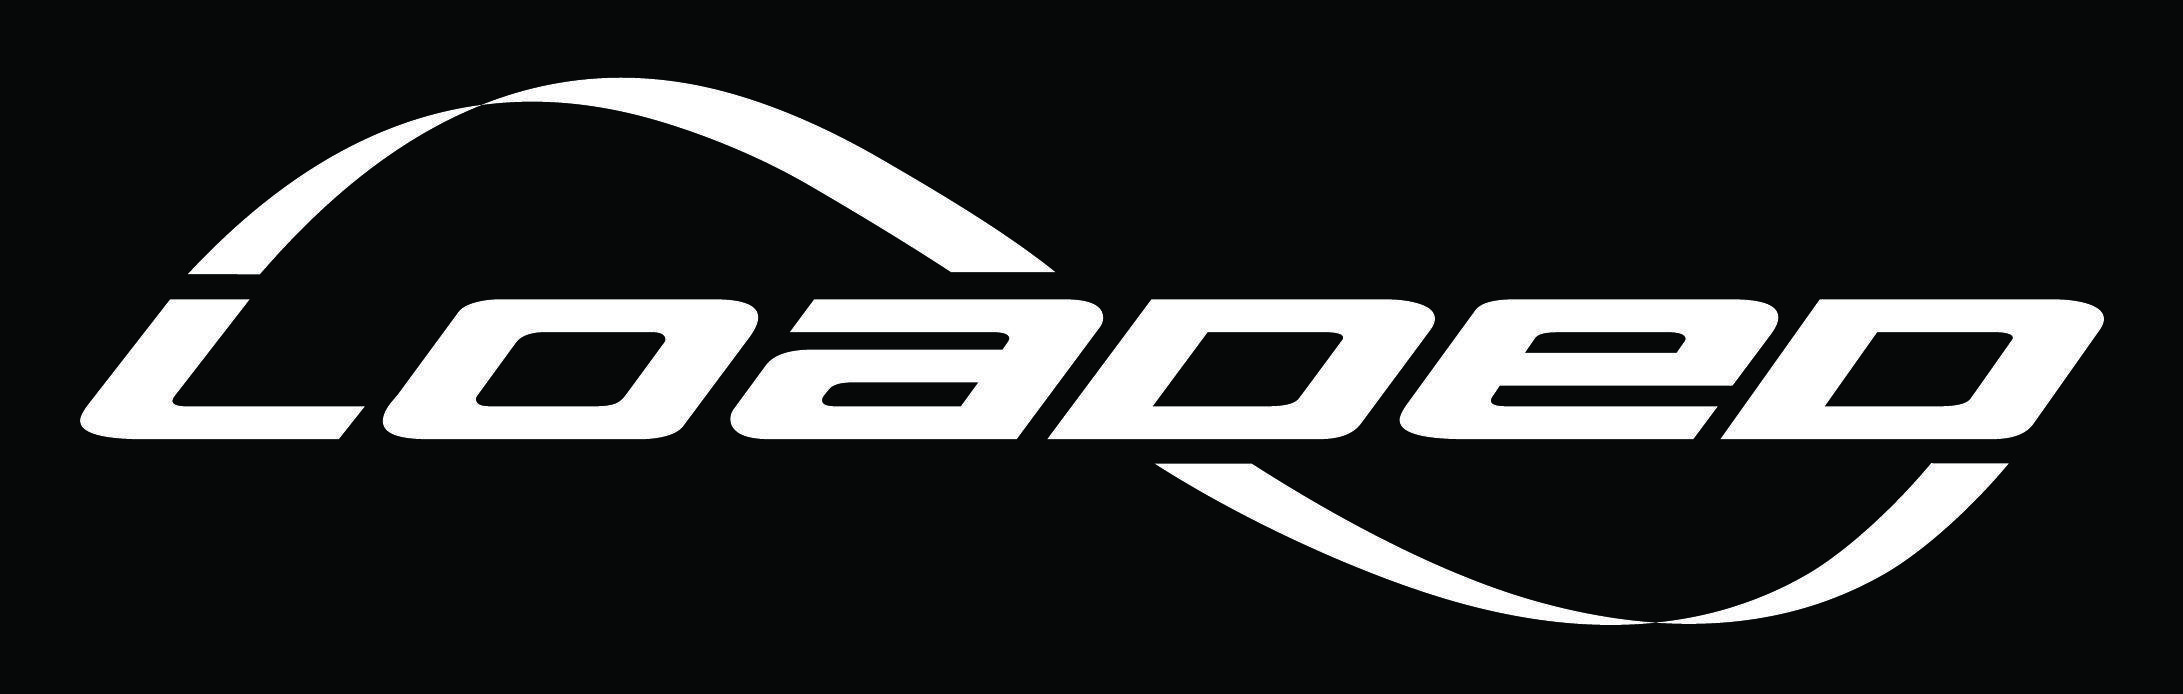 Loaded Logo - Loaded Boards, Inc